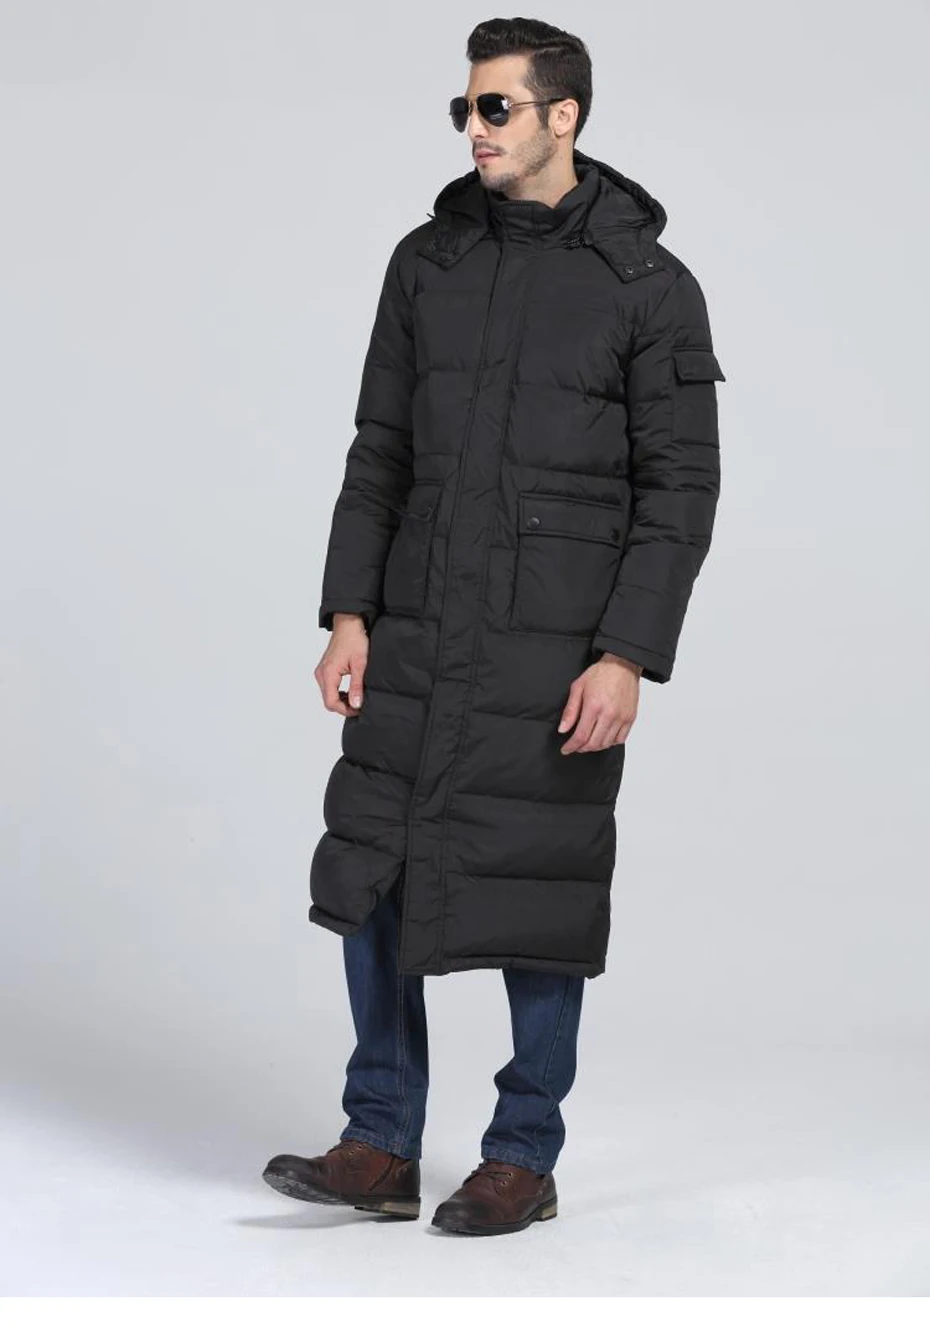 Holyrising мужские пуховики X-long, мужское пуховое пальто, высшее качество, 80% белый утиный пух, куртка с капюшоном, зимняя теплая куртка, 18380-5